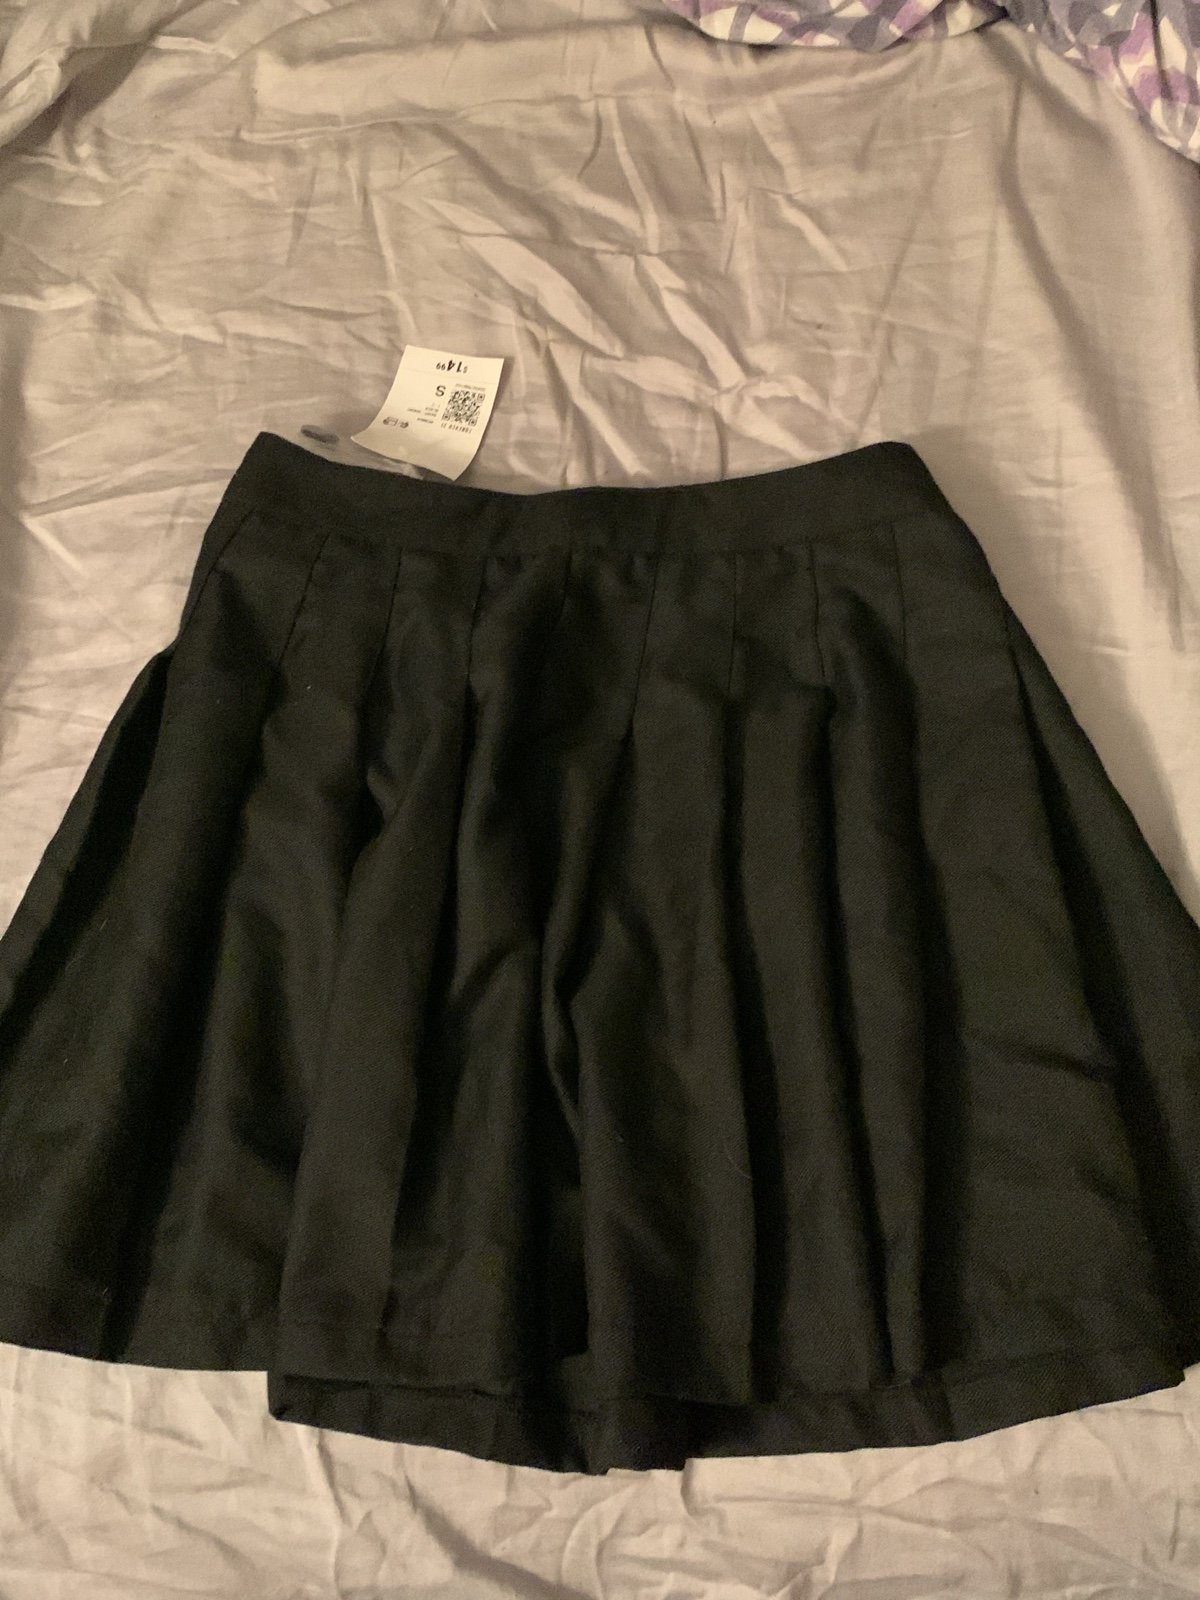 Custom Forever 21 black pleated skirt jCiIIVncW Online 